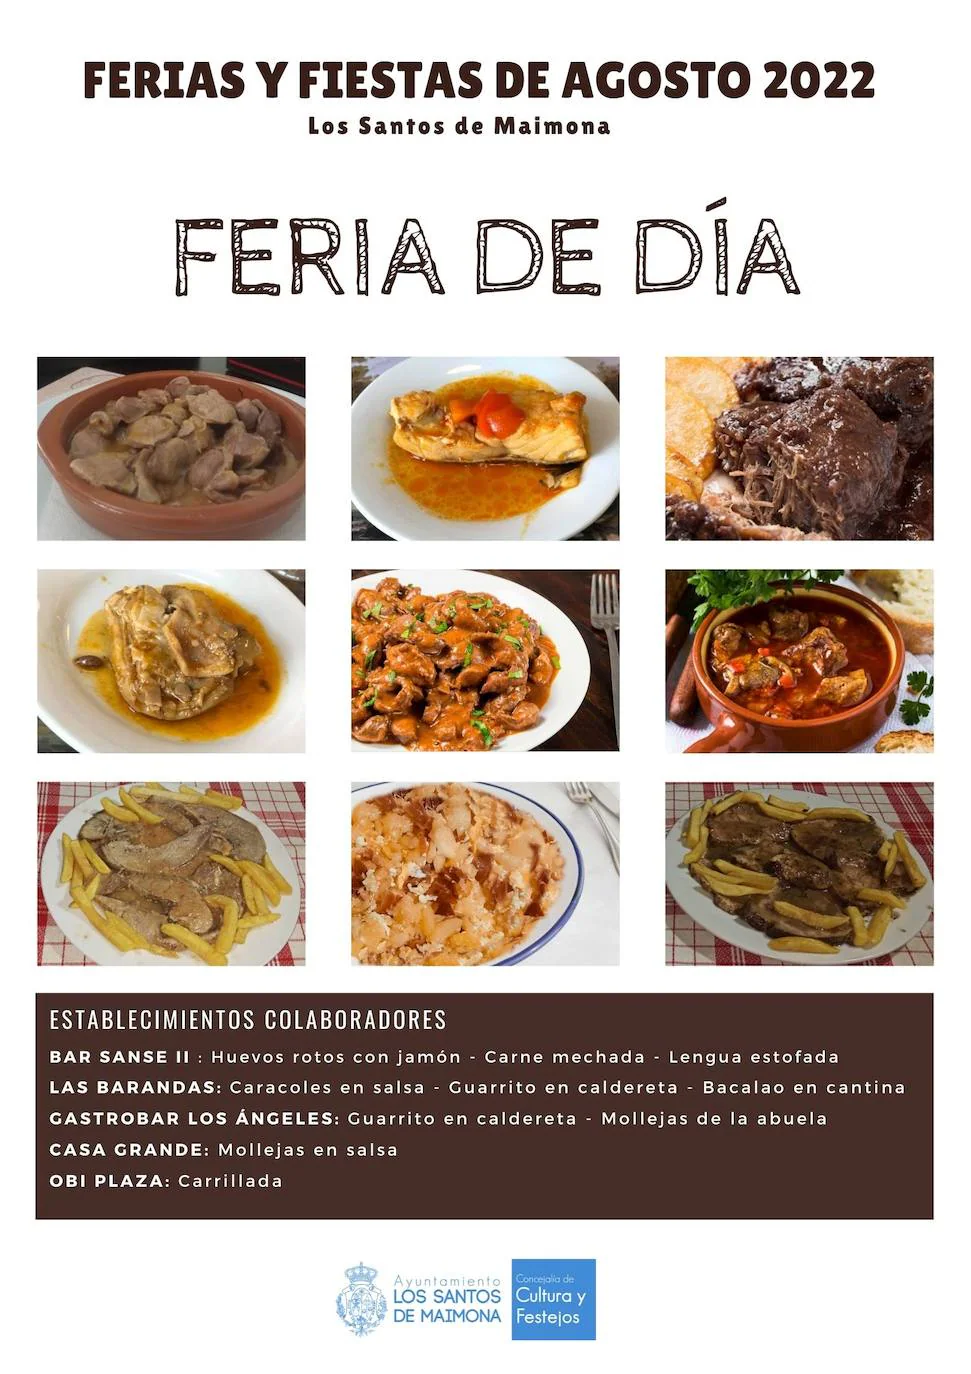 Especialidades gastronómicas en la Feria de Día: guarrito, bacalao, mollejas, huevos rotos....